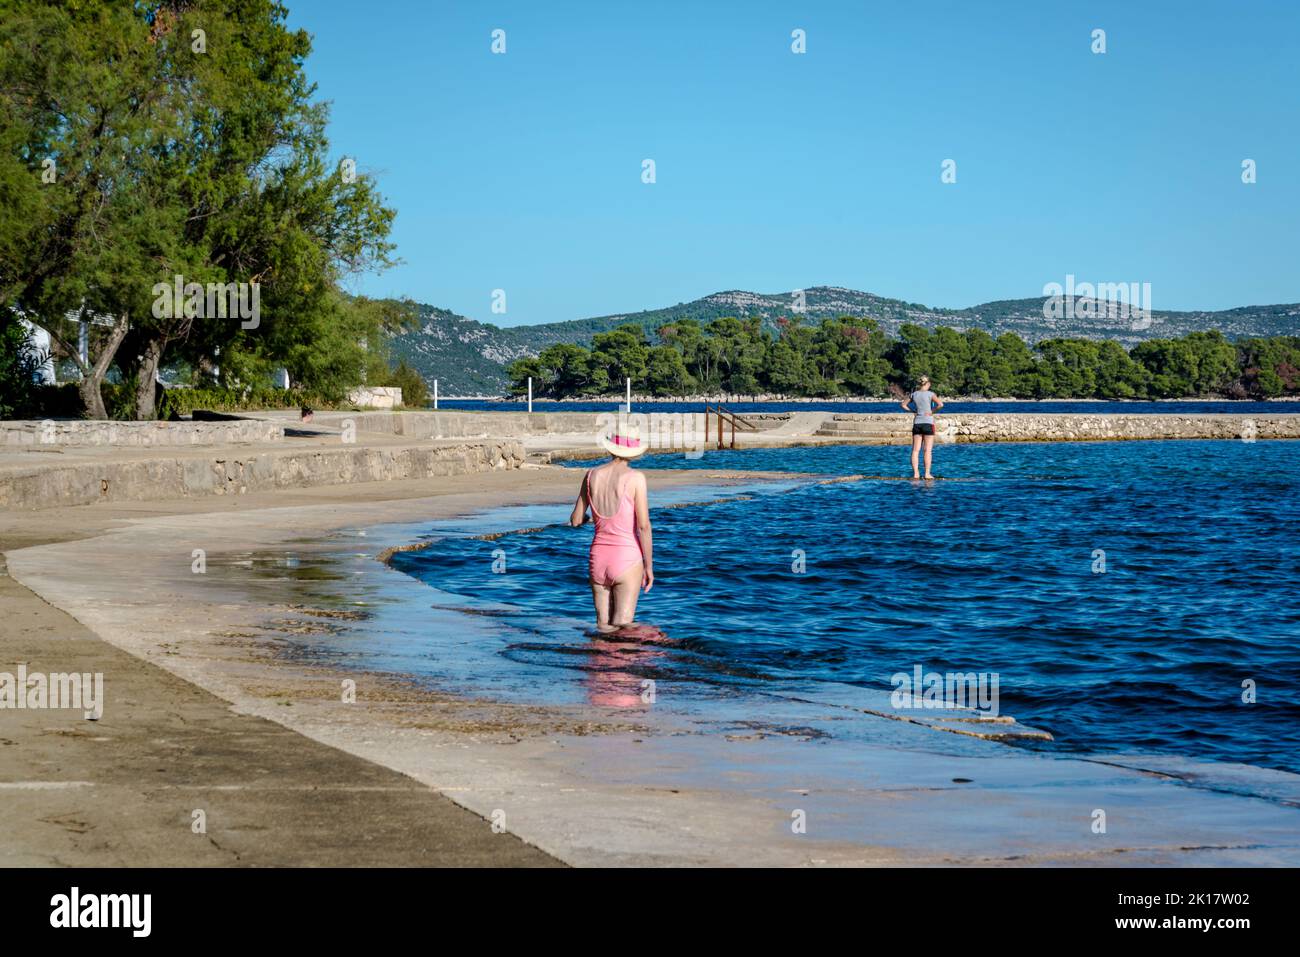 Two women on beach, Veli Iz, Island of Iz, Zadar archipelago, Dalmatia, Croatia Stock Photo